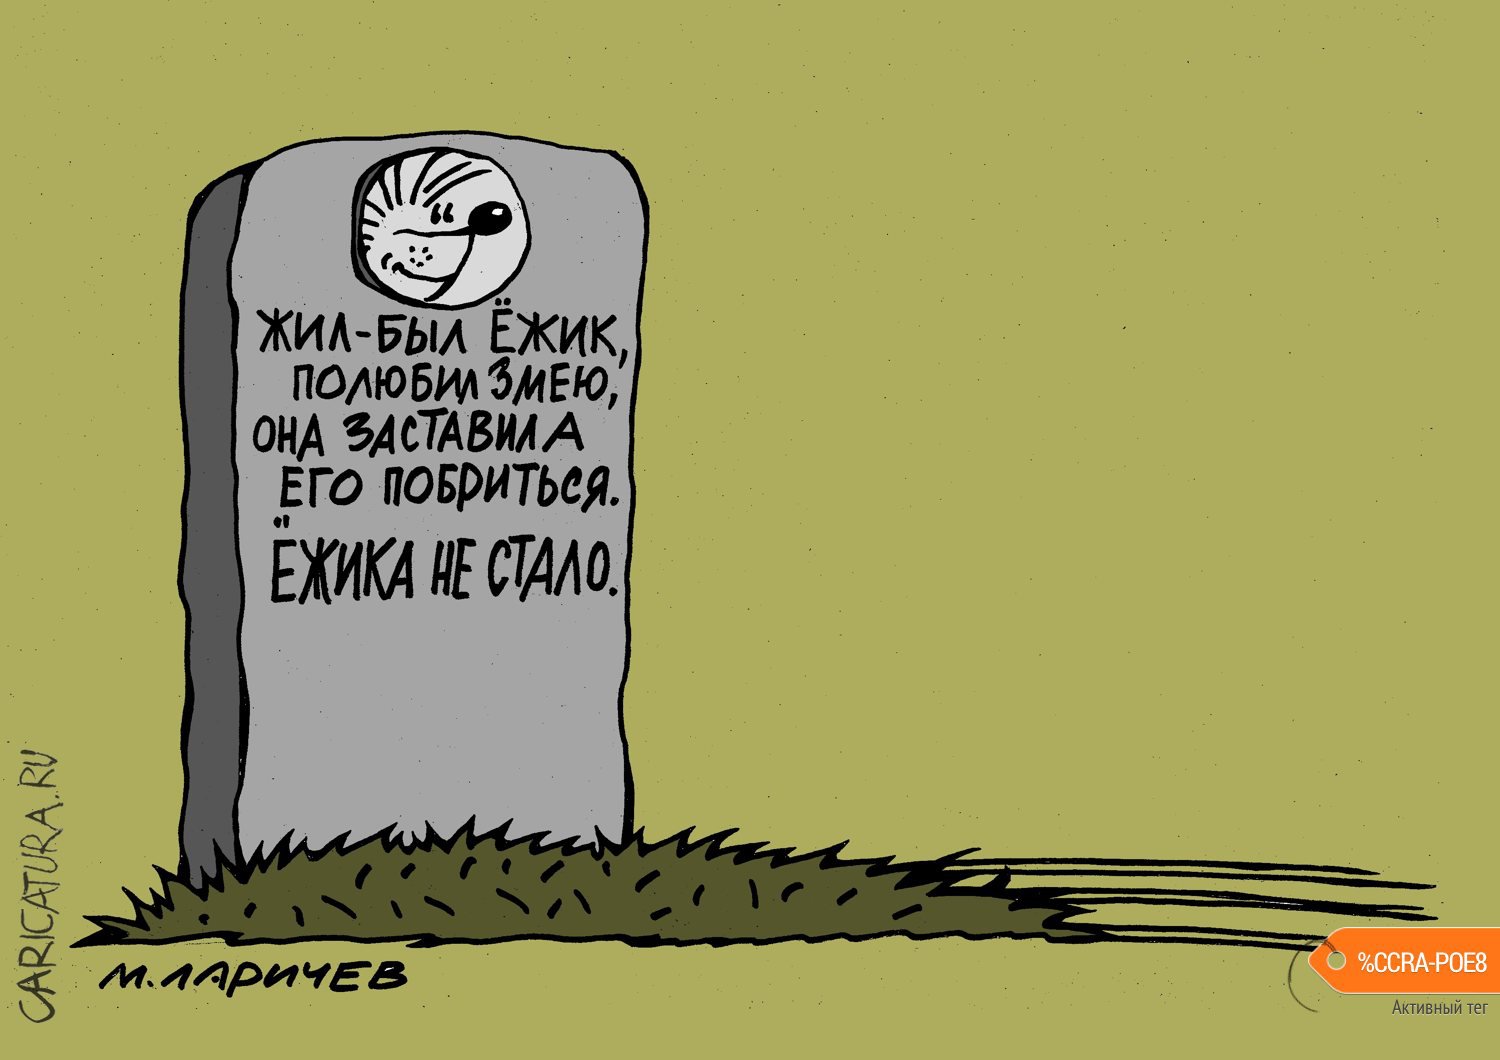 Карикатура "Еще раз про любовь", Михаил Ларичев